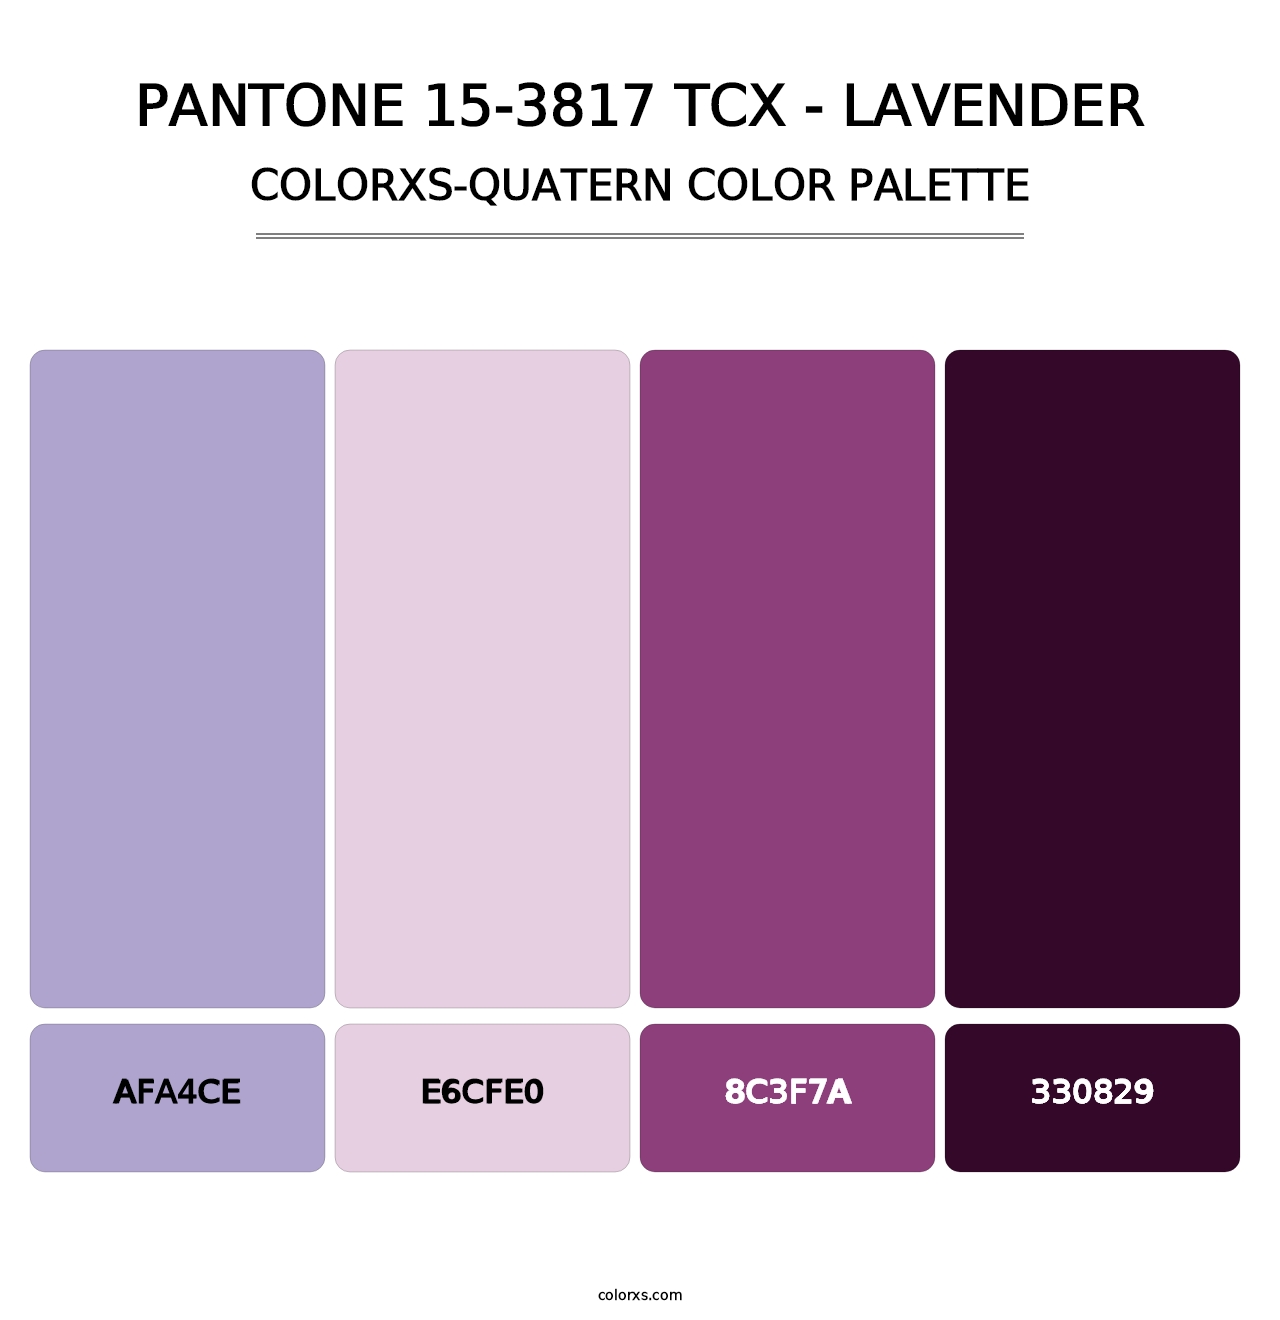 PANTONE 15-3817 TCX - Lavender - Colorxs Quatern Palette